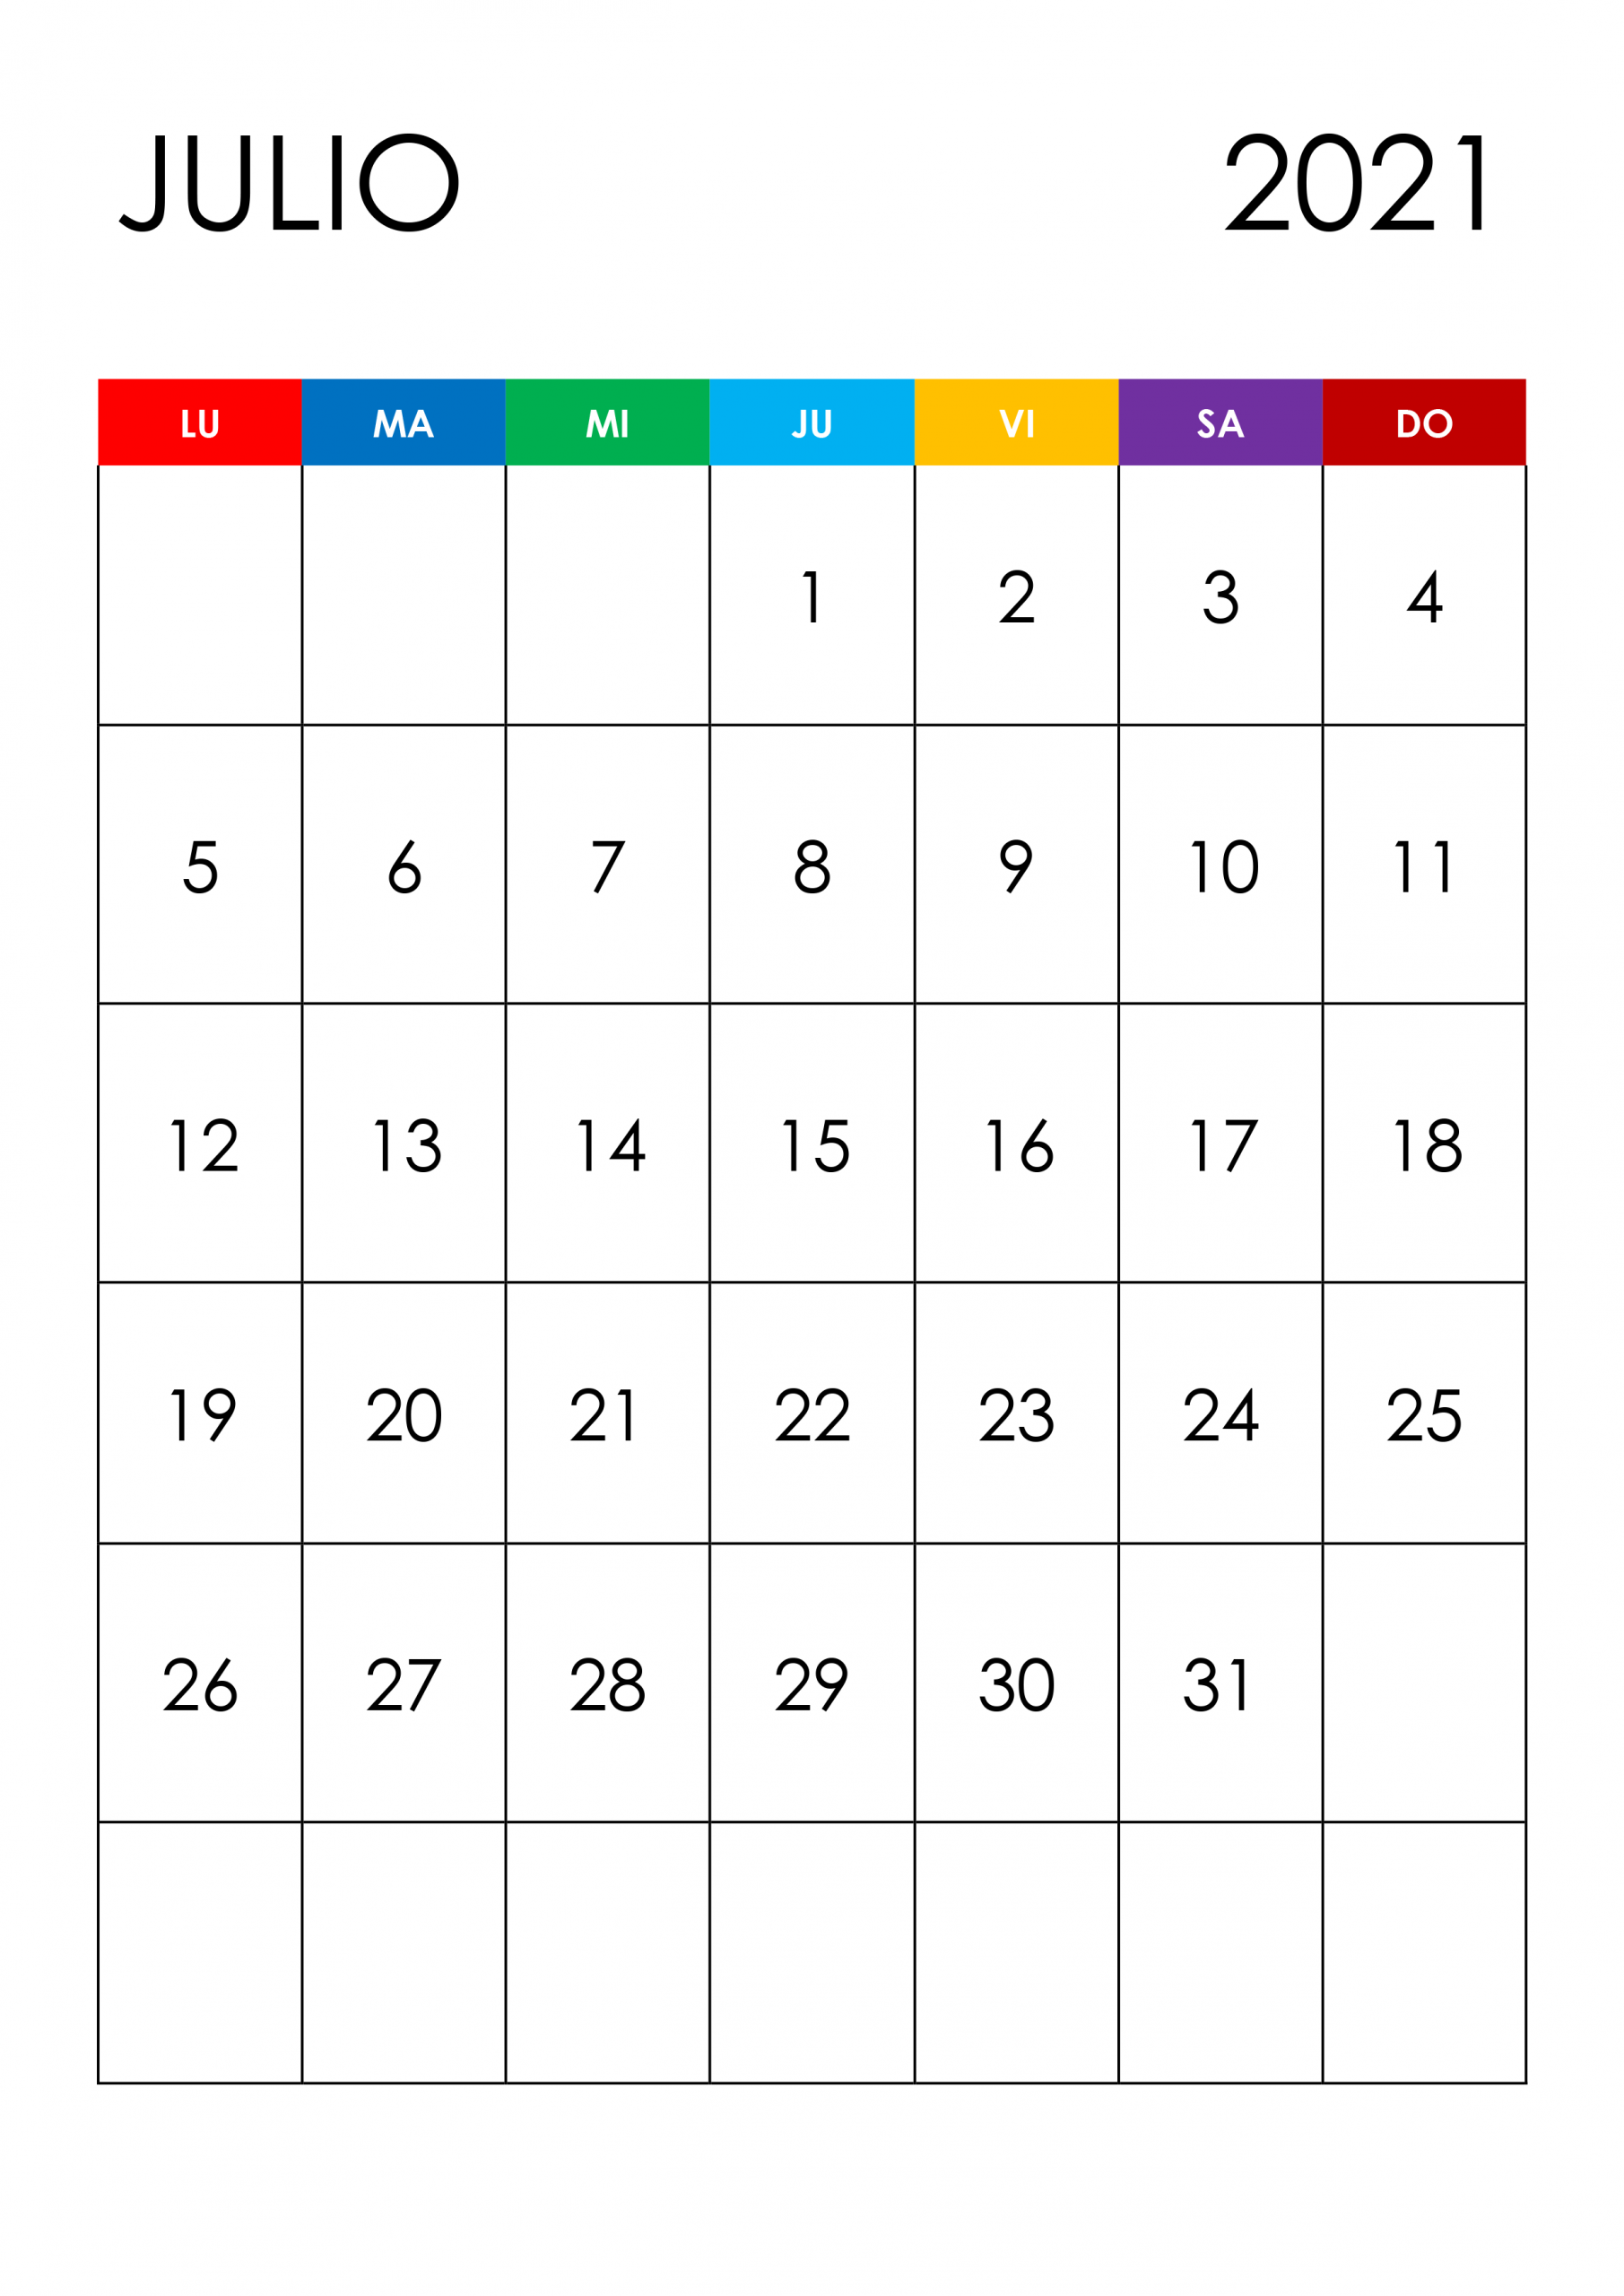 Calendario Julio 2021 - Calendariossu